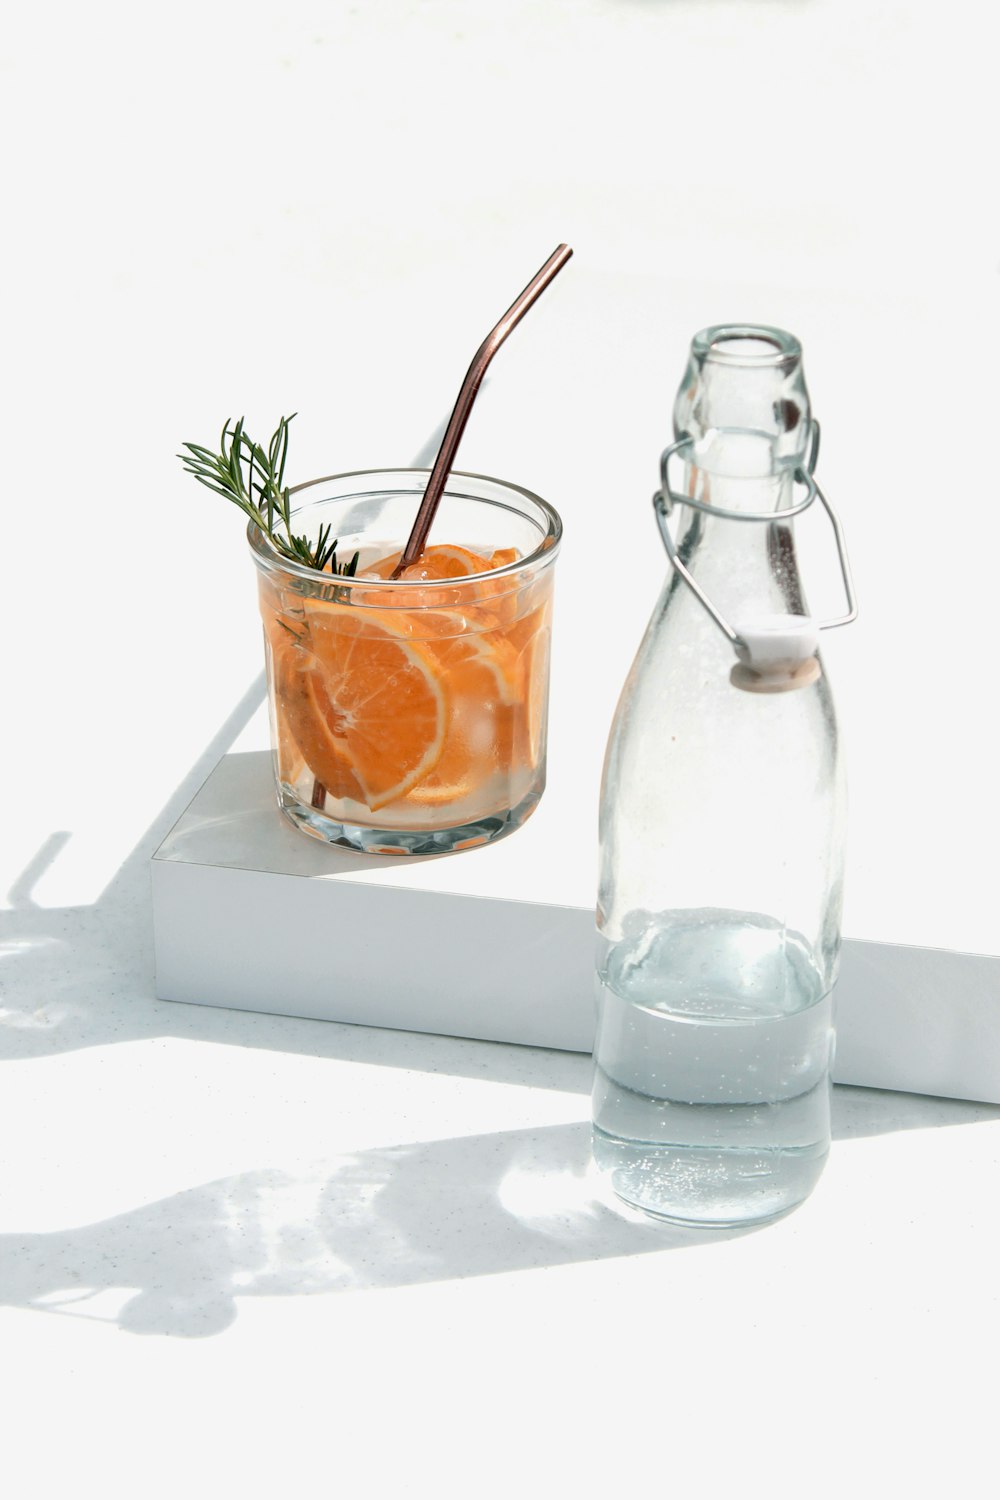 clear glass bottle beside orange juice in clear glass bottle